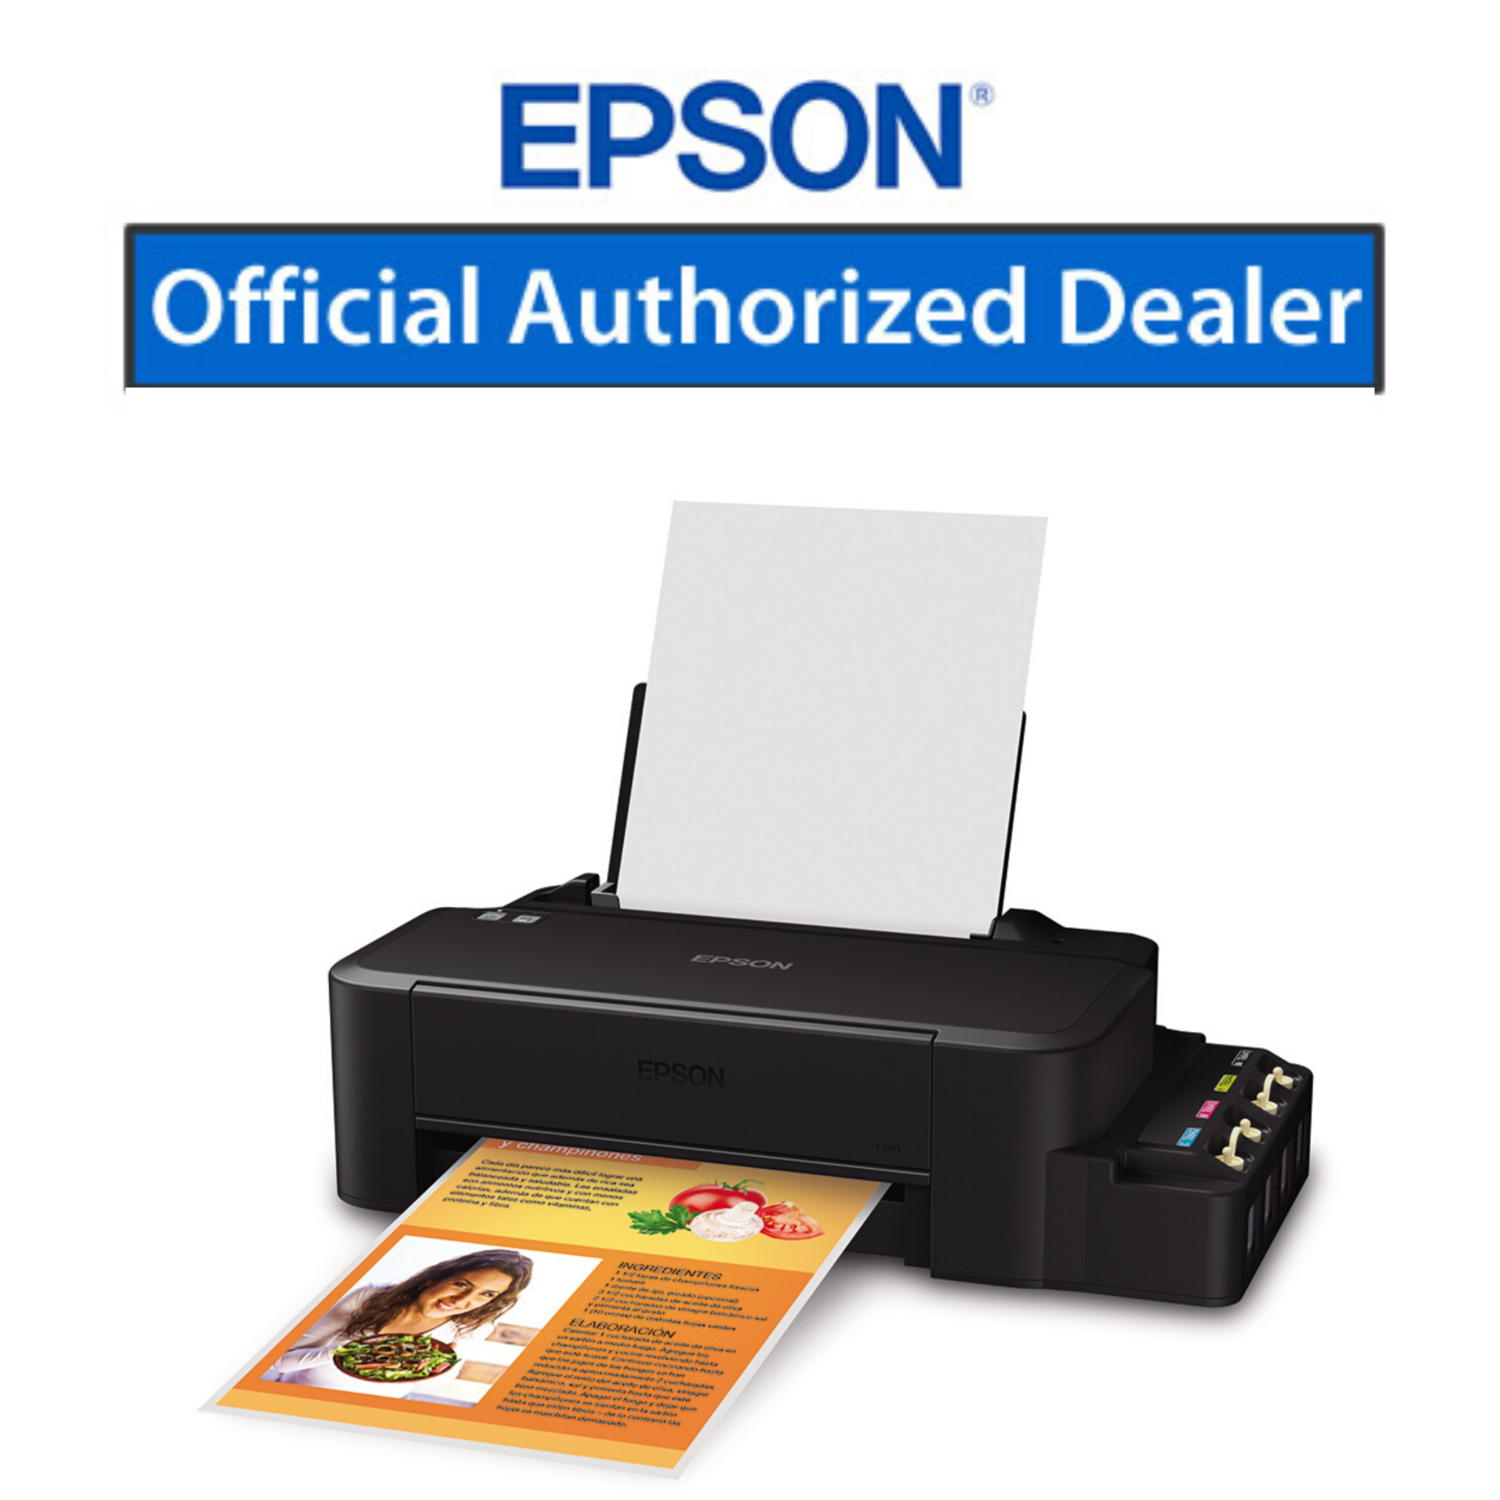 Купить принтер в гомеле. Принтер Эпсон l120. Принтер Epson l121. Принтер Эпсон л 120. Принтер Epson ECOTANK l121.